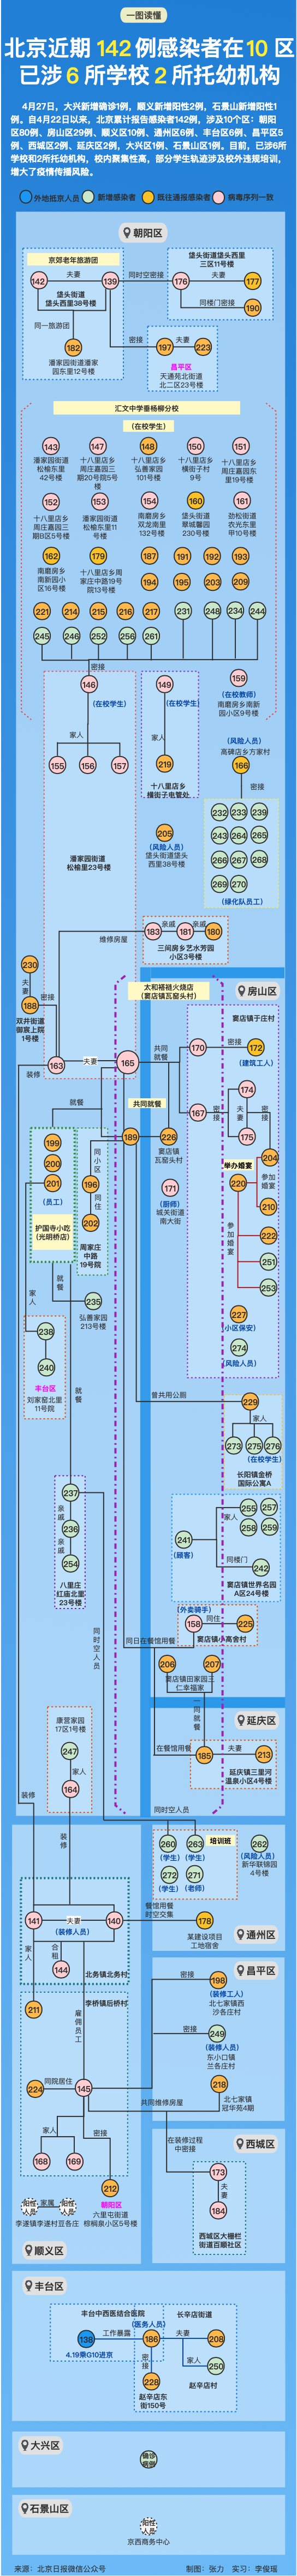 北京四个区最新通报丨一地常态化核酸检测：每48小时一次丨天津拟推“拼车”新规丨海河游船开航